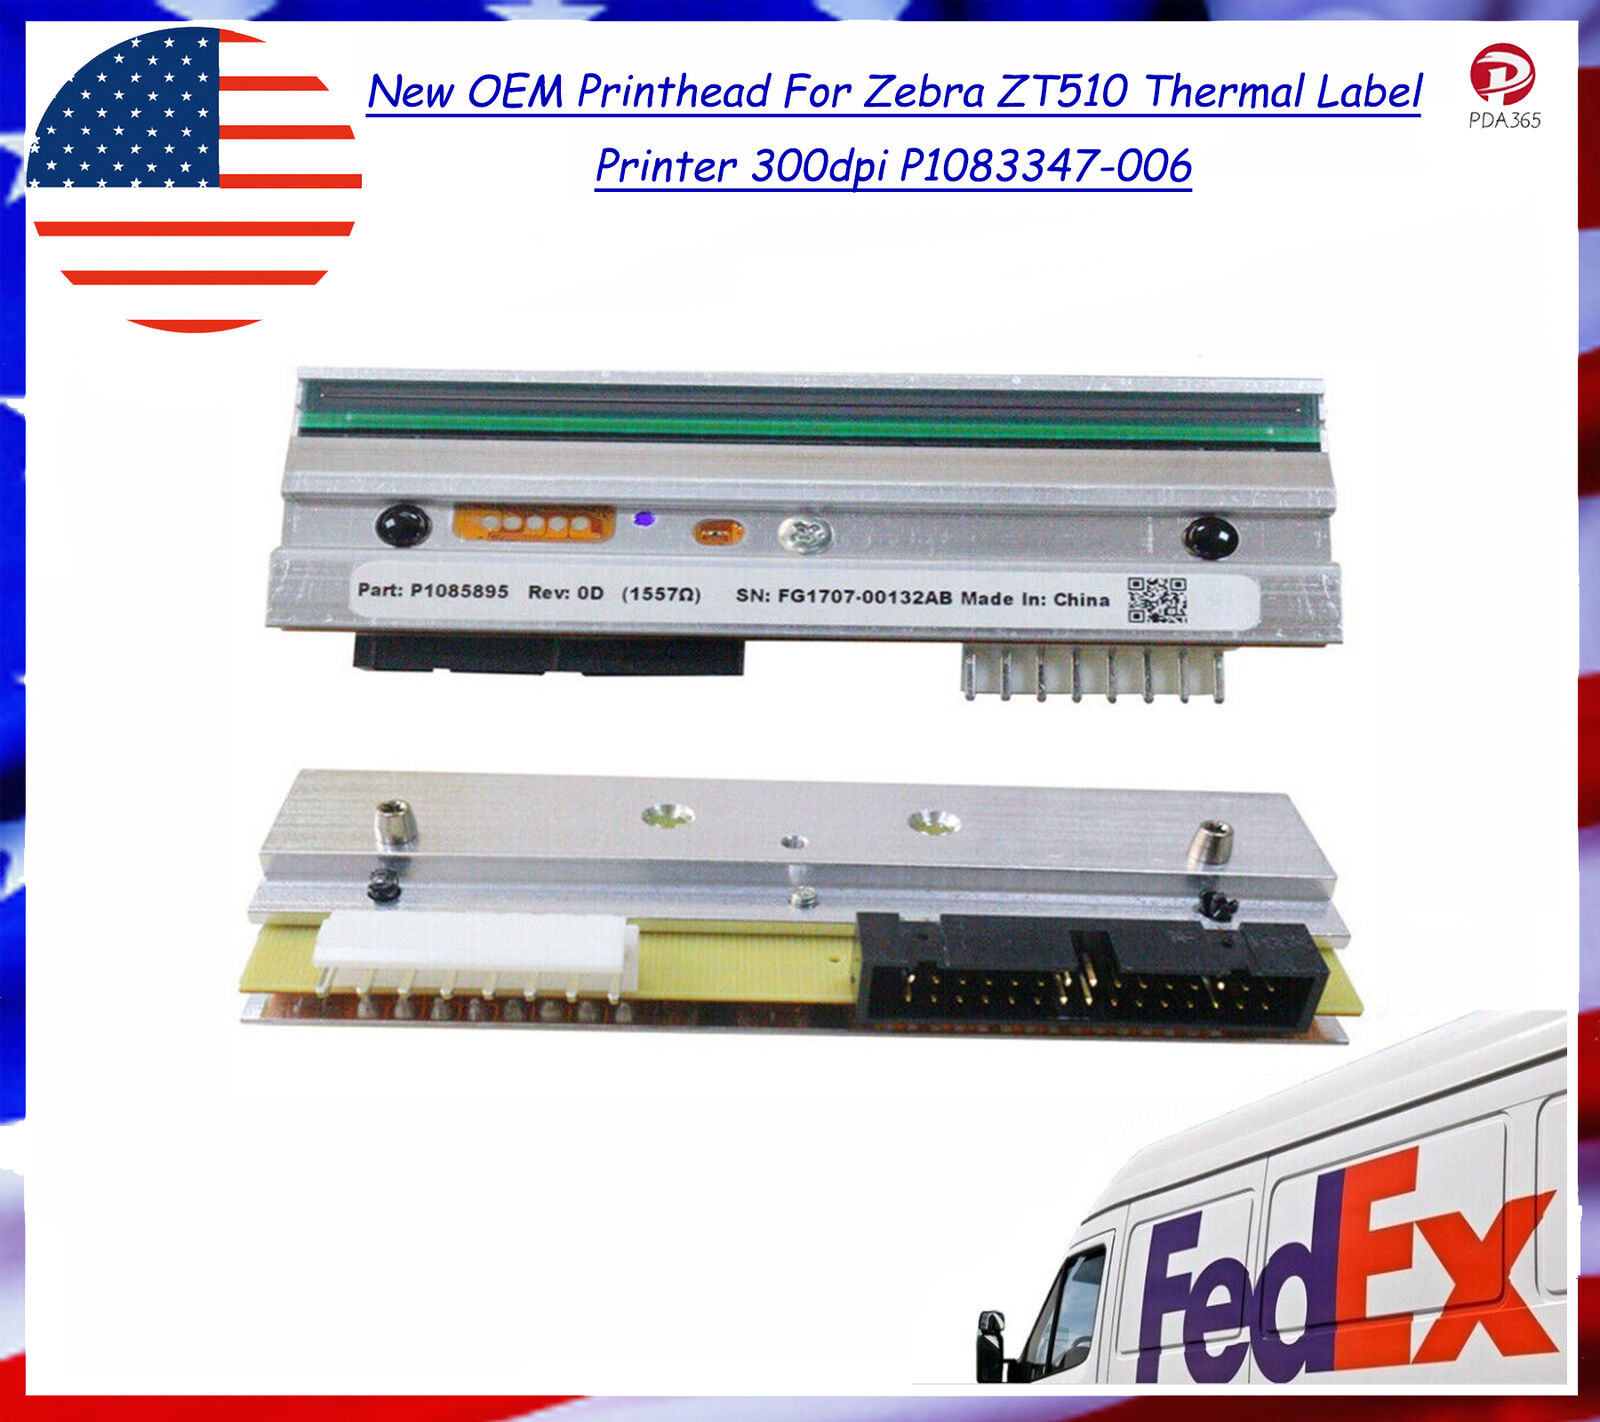 New OEM Printhead For Zebra ZT510 Thermal Label Printer 300dpi P1083347-006